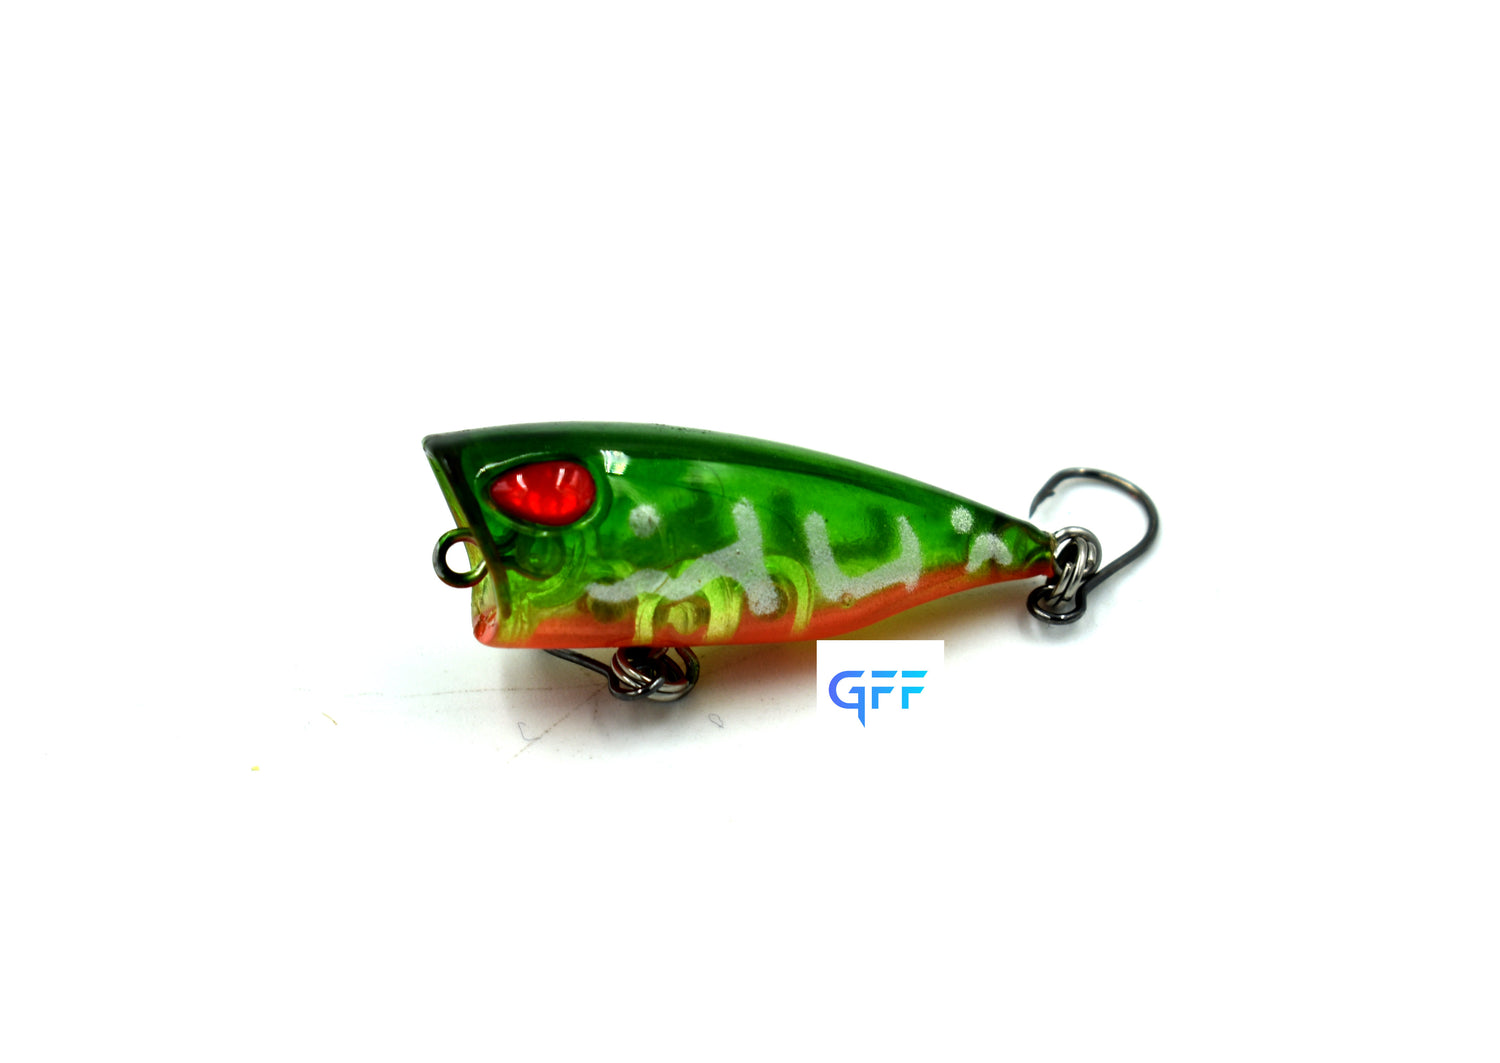 Micro popper lure 3cm/4g – GFF FISHING GEAR